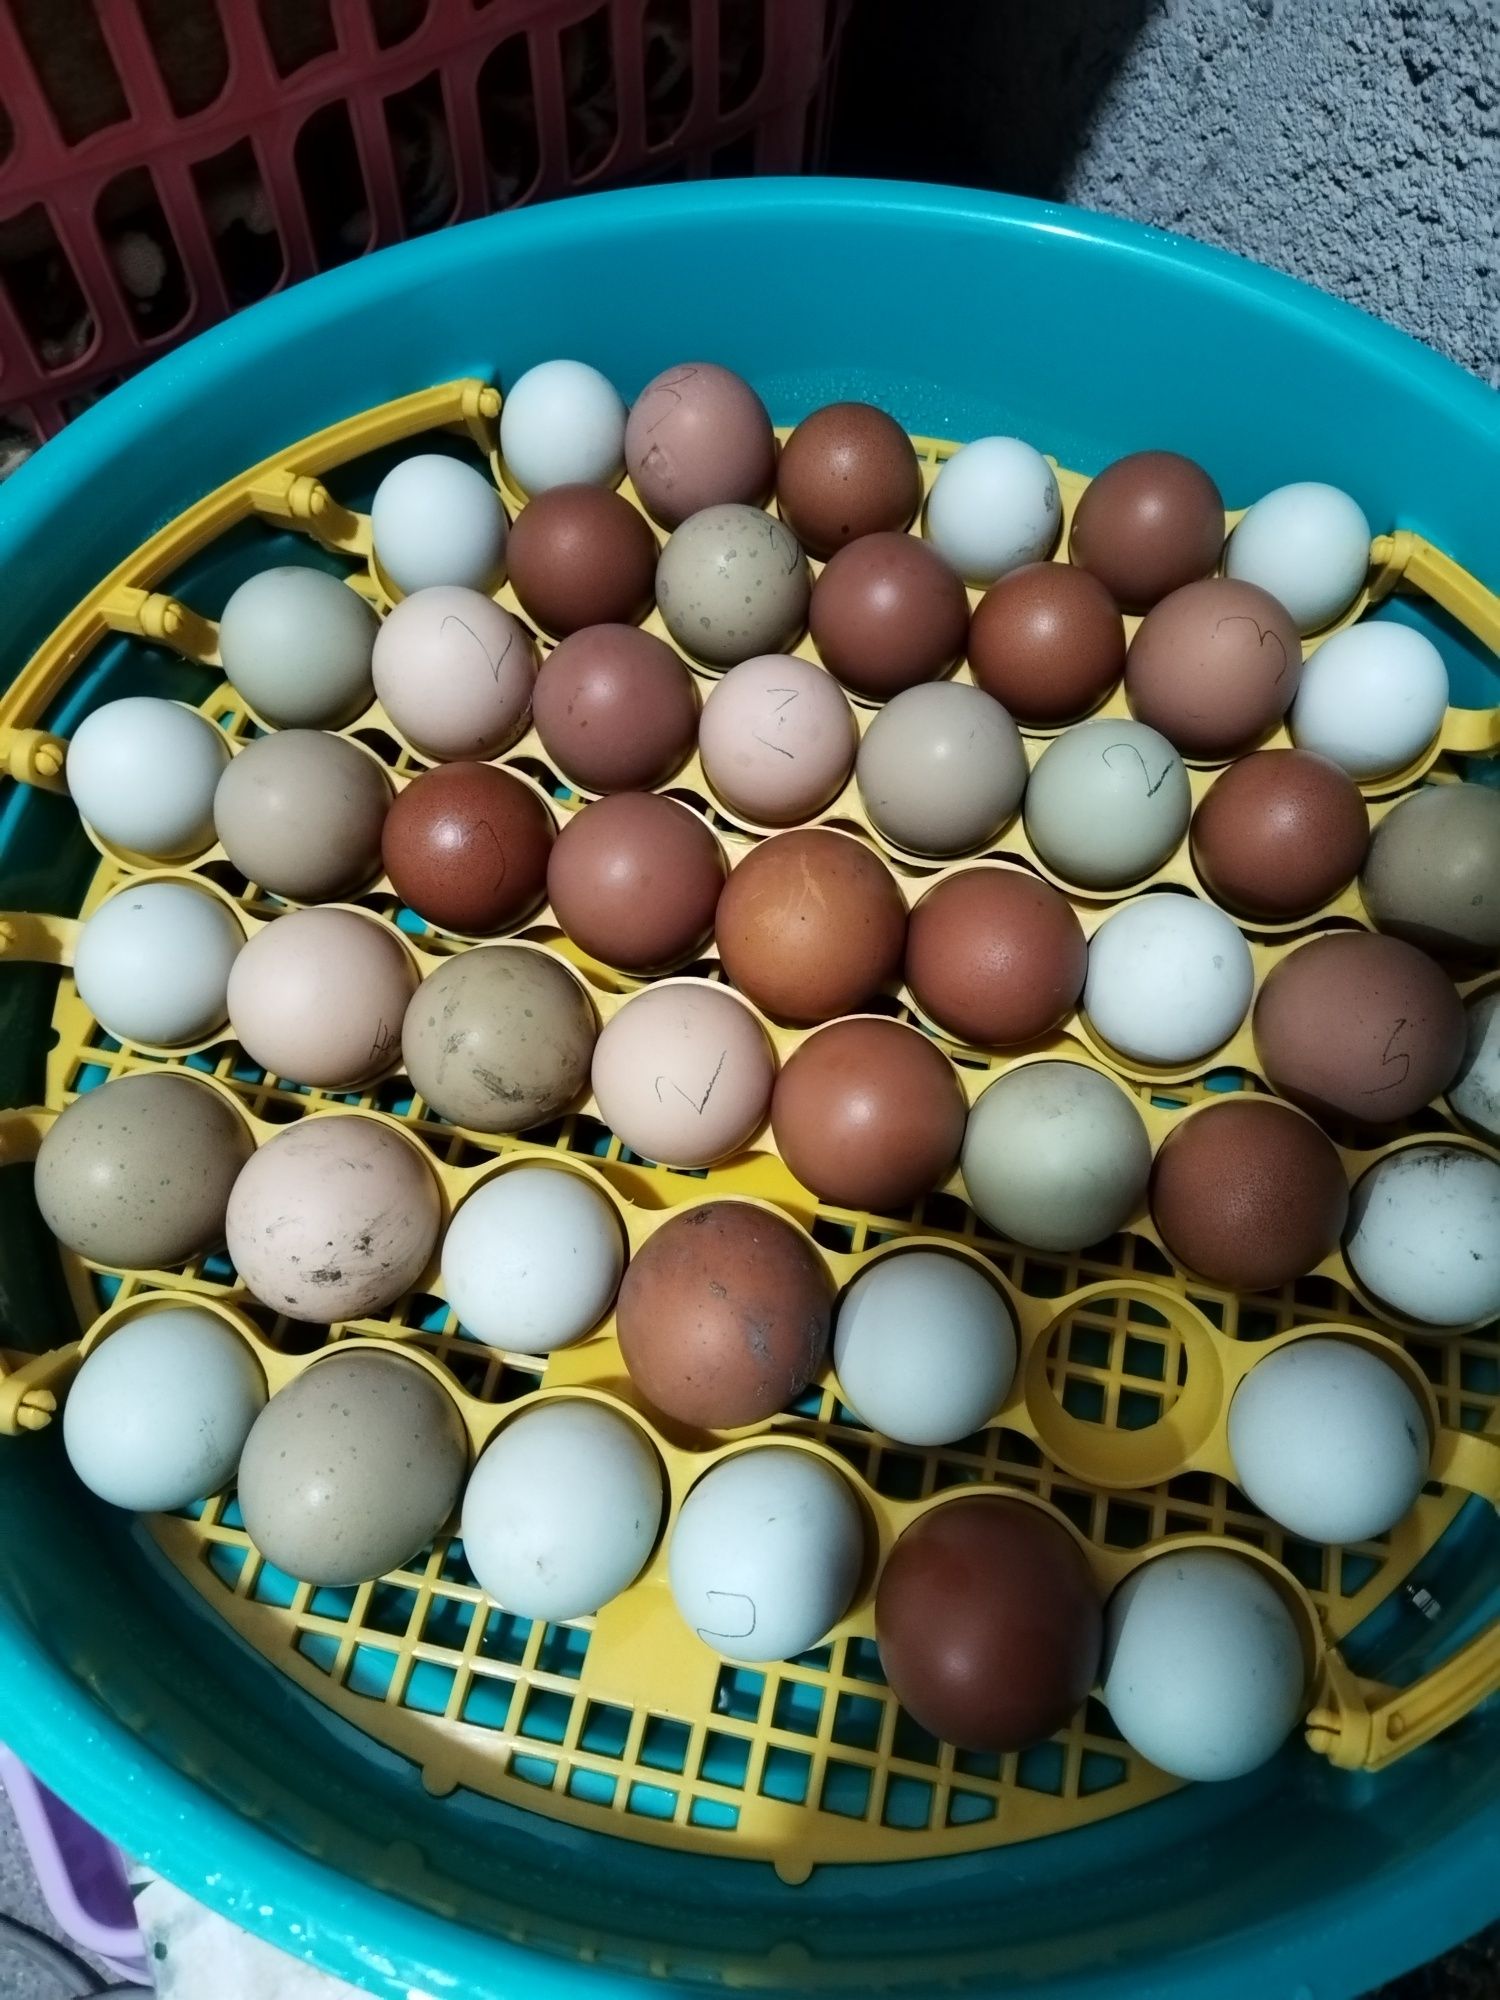 Vând oua incubat